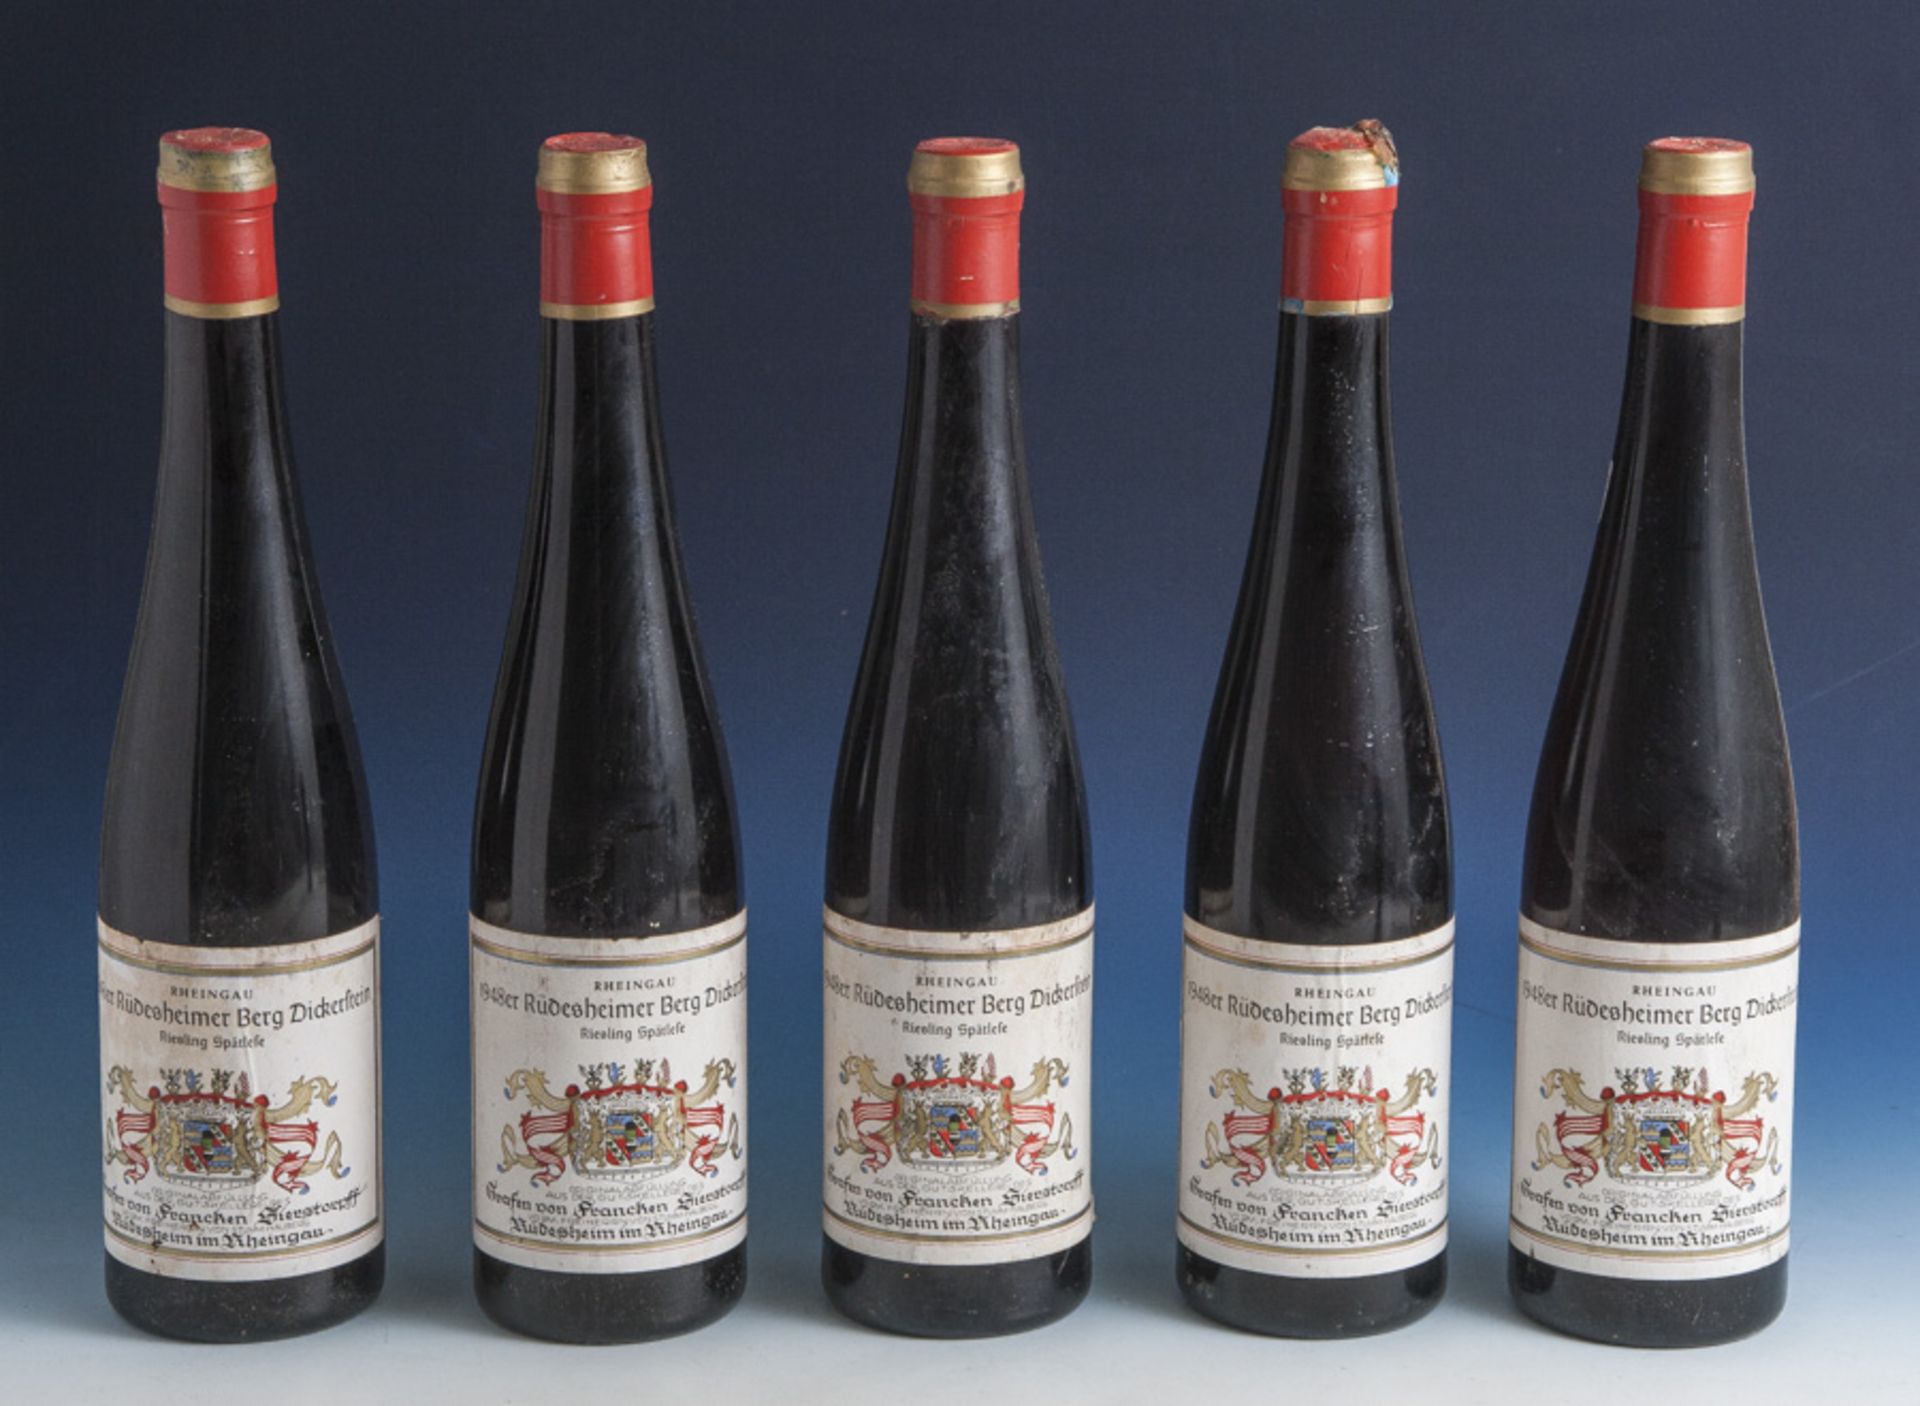 5 Flaschen Riesling, Rheingau 1948er Rüdesheimer Berg Dickerstein, Riesling Spätlese, ausder